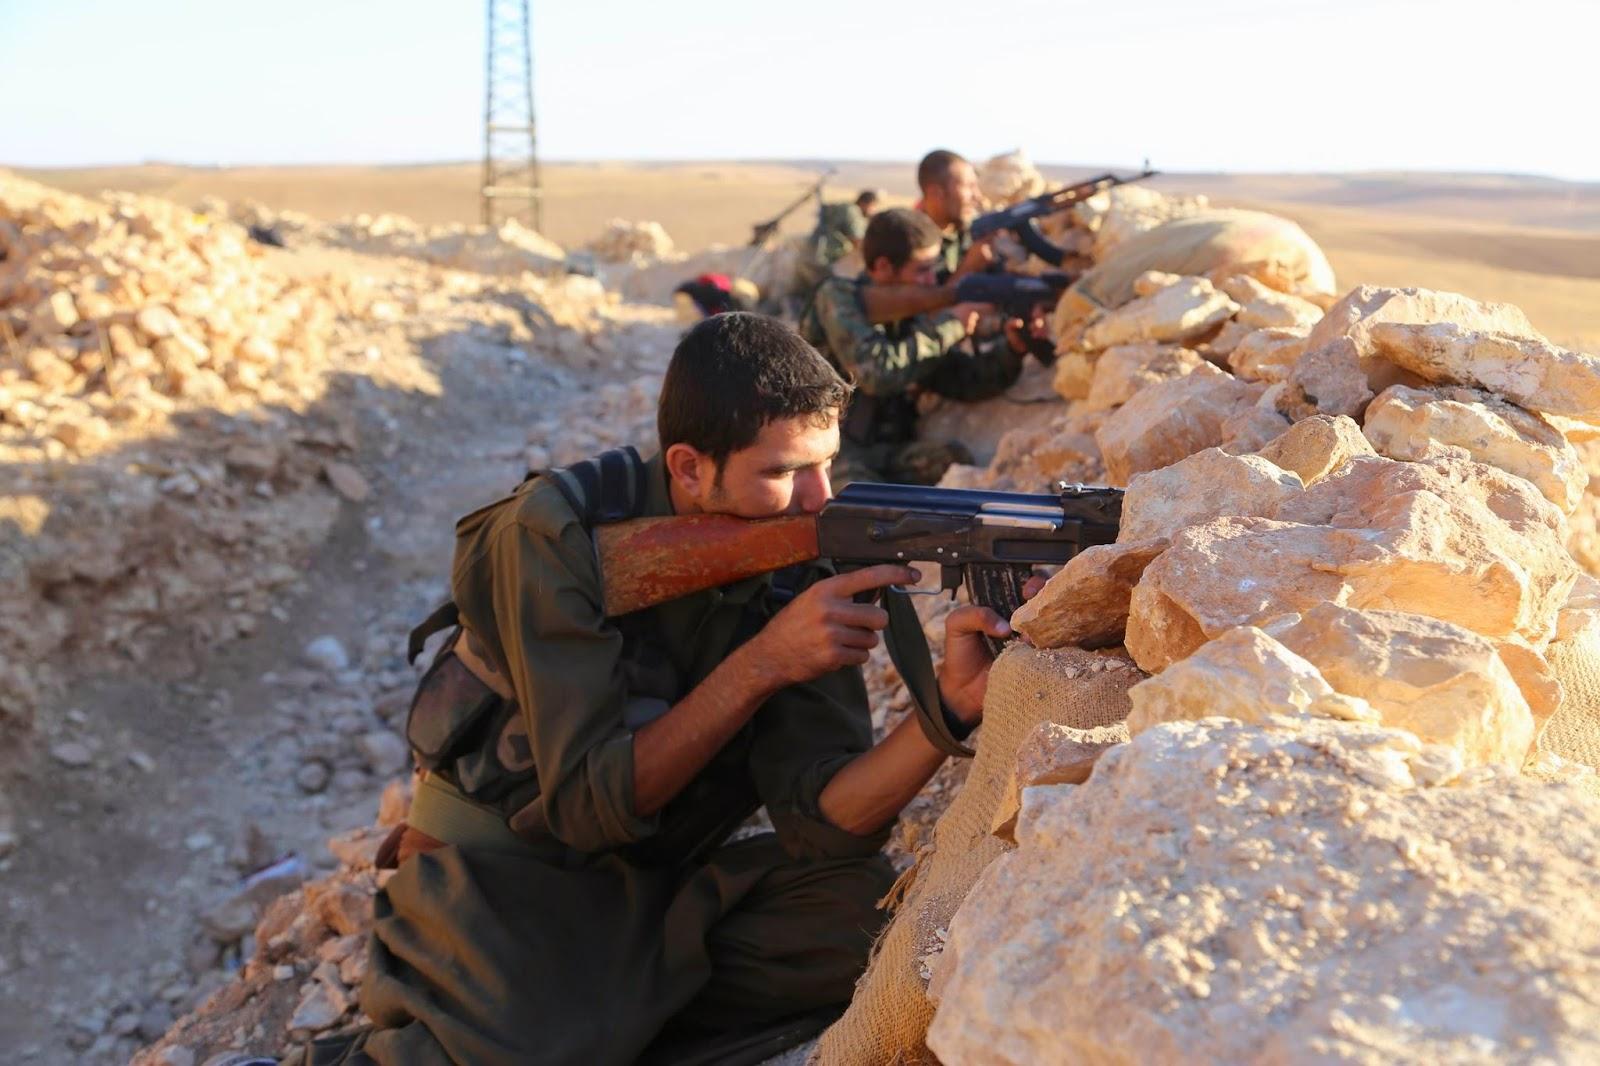 MONDE > Daesh repoussé hors de Kobané, après 4 mois de combats